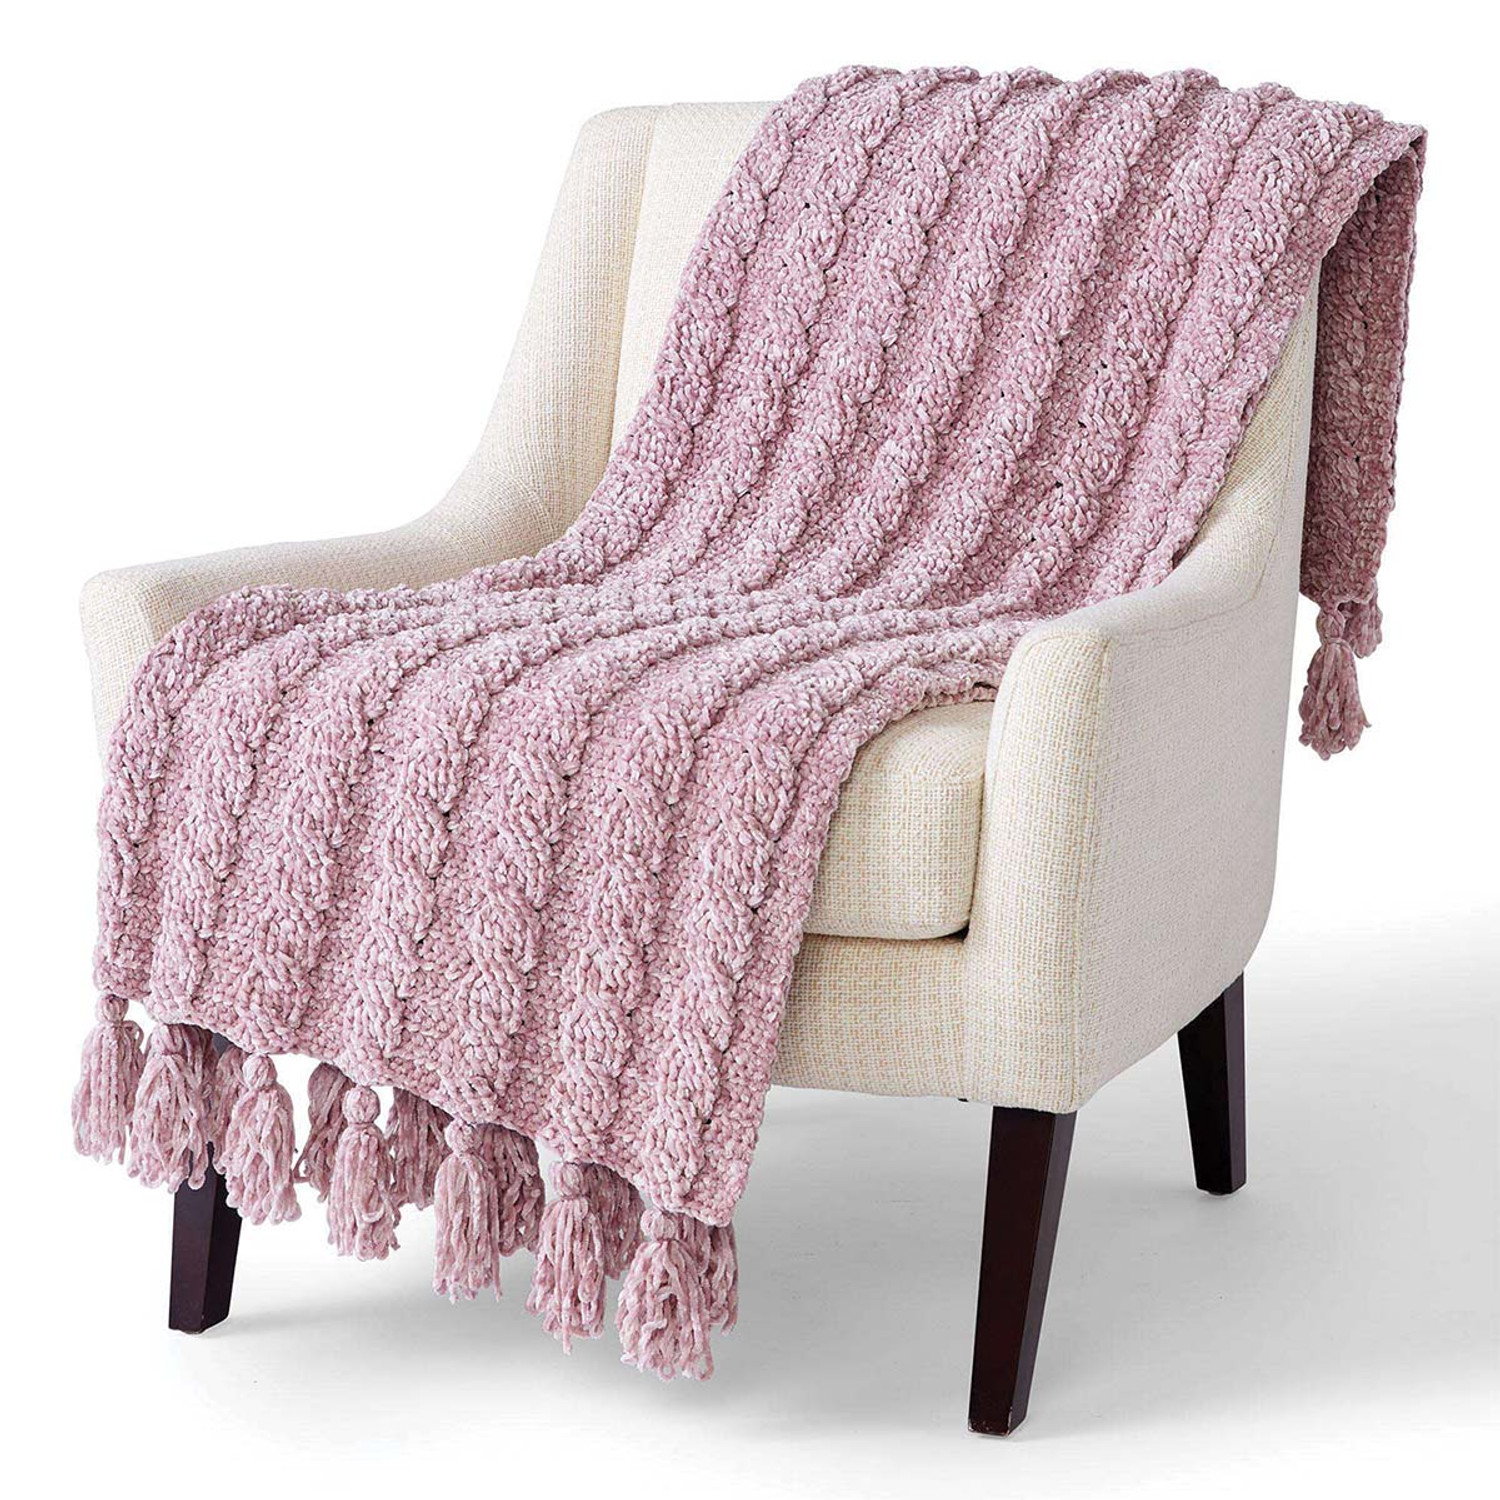 Bernat Velvet Velveteal Yarn - 2 Pack of 300g/10.5oz - Polyester - 5 Bulky - 315 Yards - Knitting/Crochet